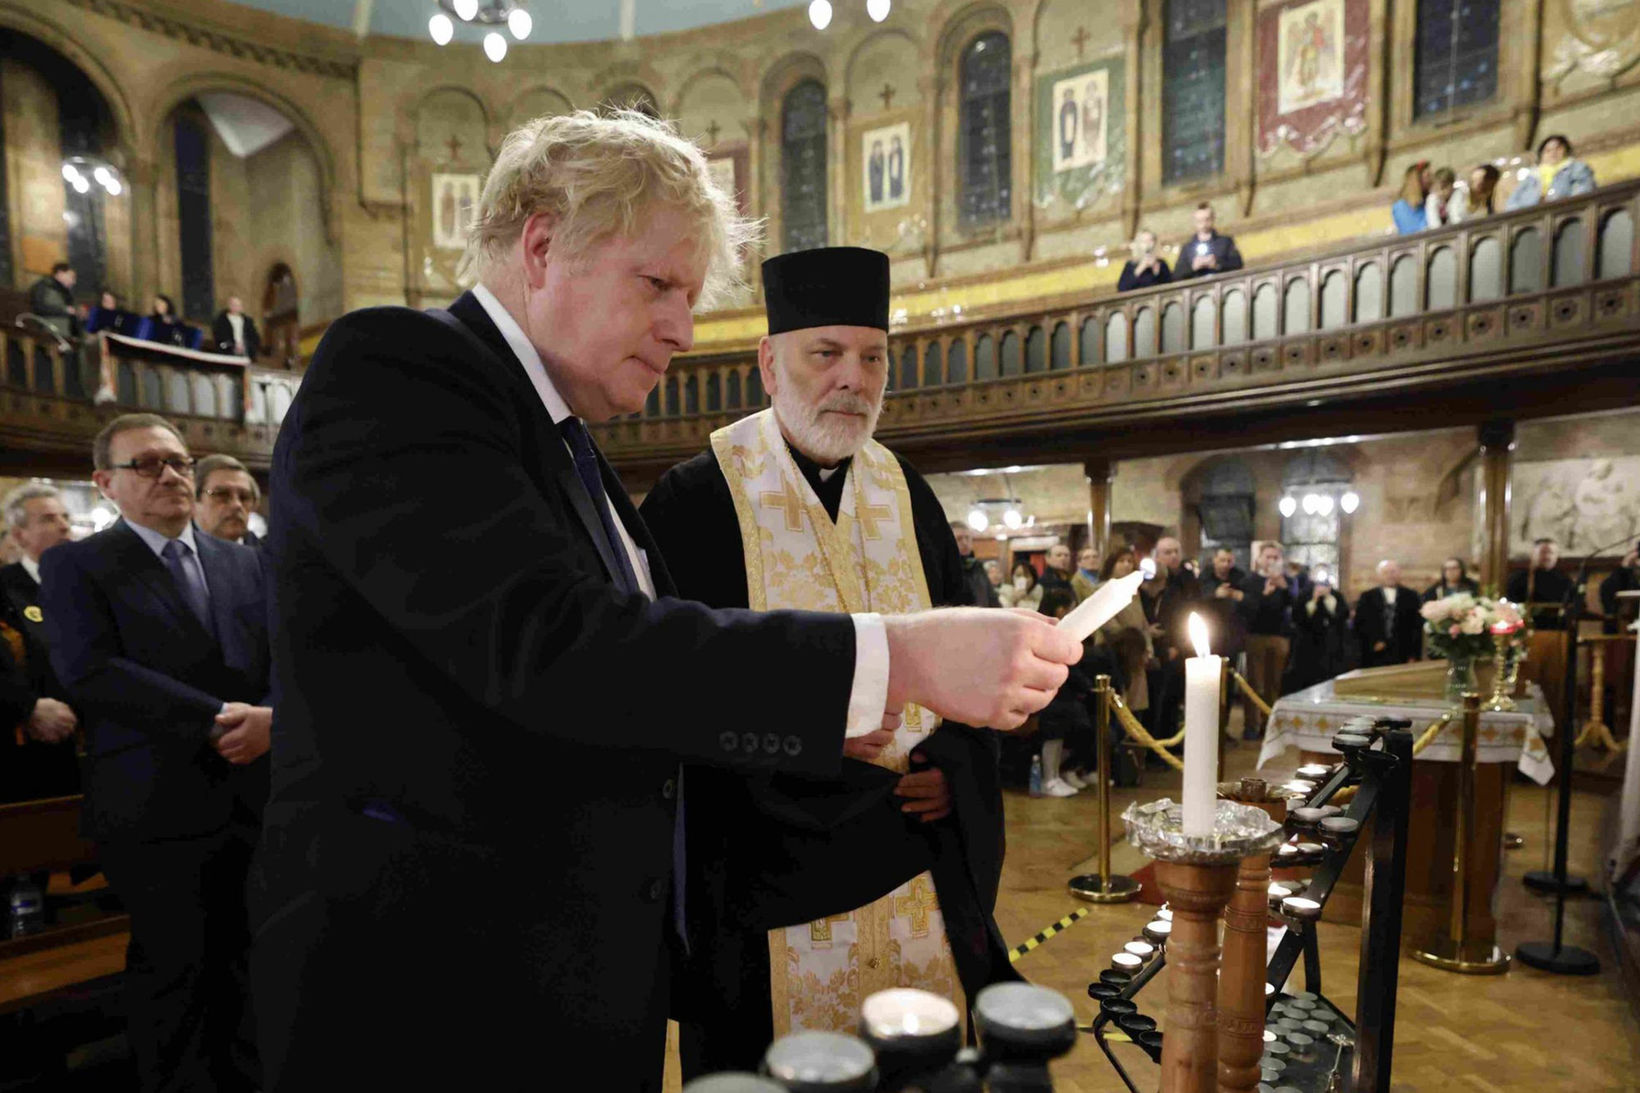 Британський прем’єр-міністр Борис Джонсон запалює свічку під час візиту до української католицької катедри Пресвятої Родини в Лондоні, 27 лютого 2022 року, фото: PA Images via Alamy